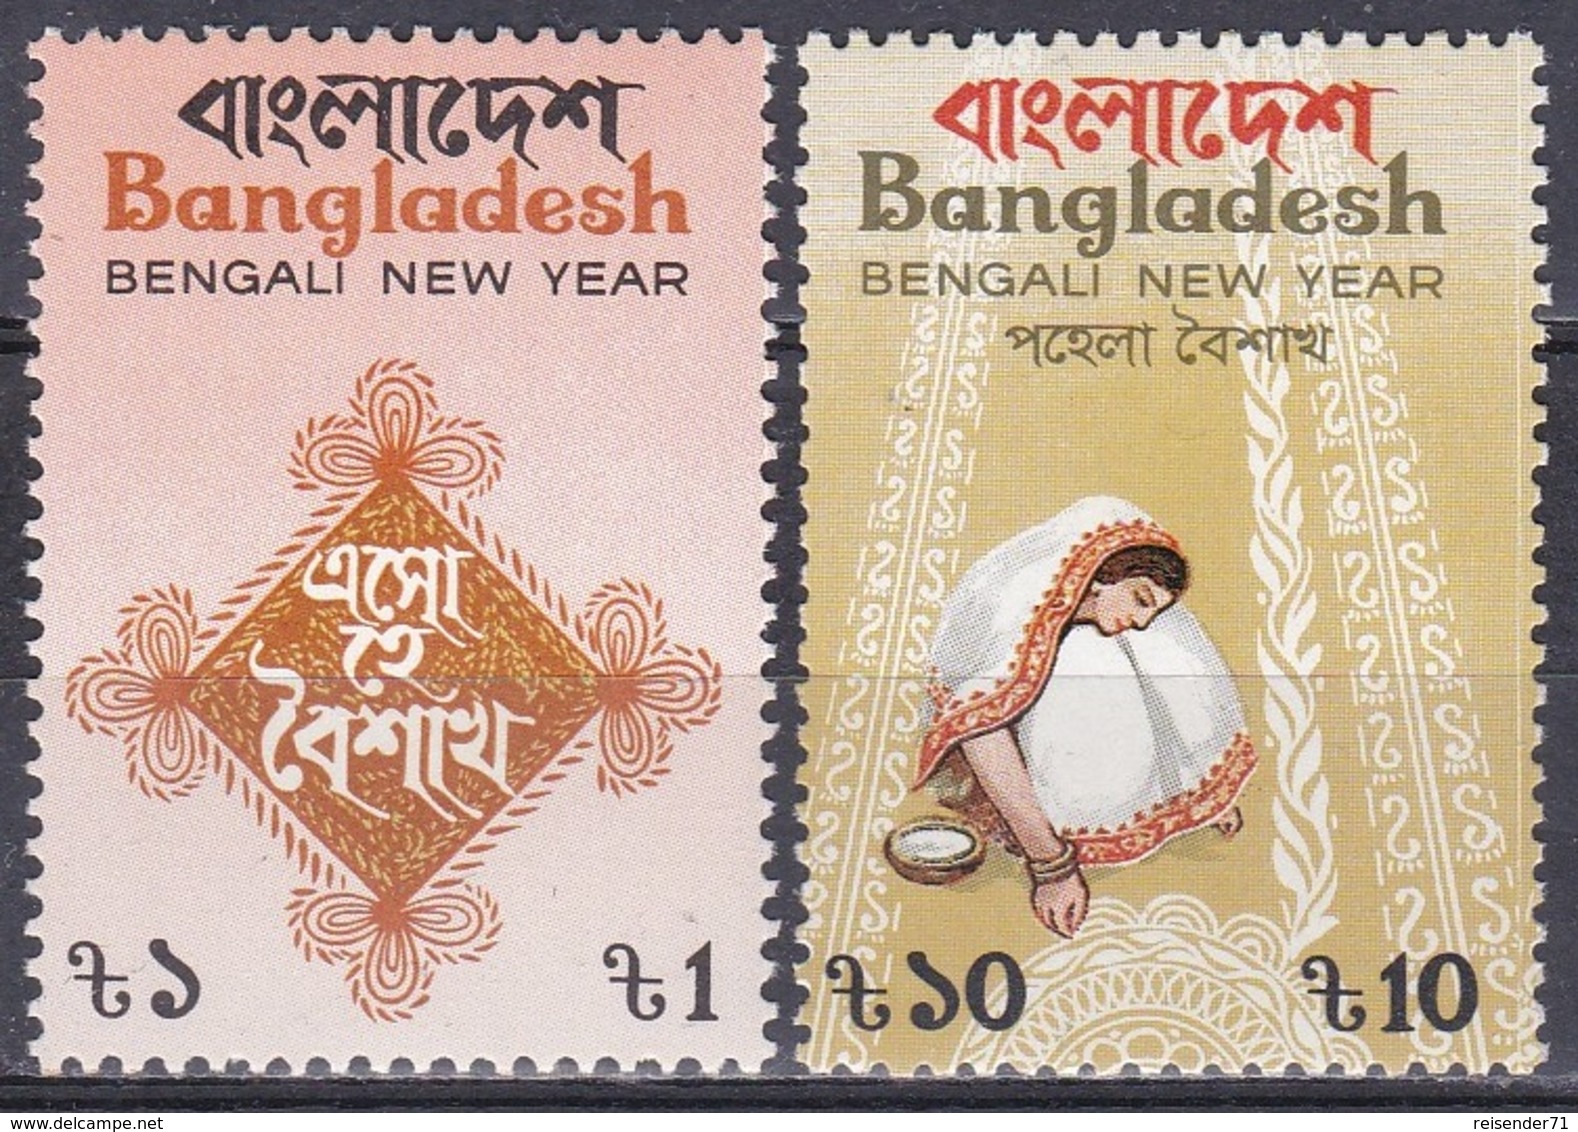 Bangladesch Bangladesh 1987 Feiertage Holiday Jahreswechsel Neujahr New Year, Mi. 260-1 ** - Bangladesch